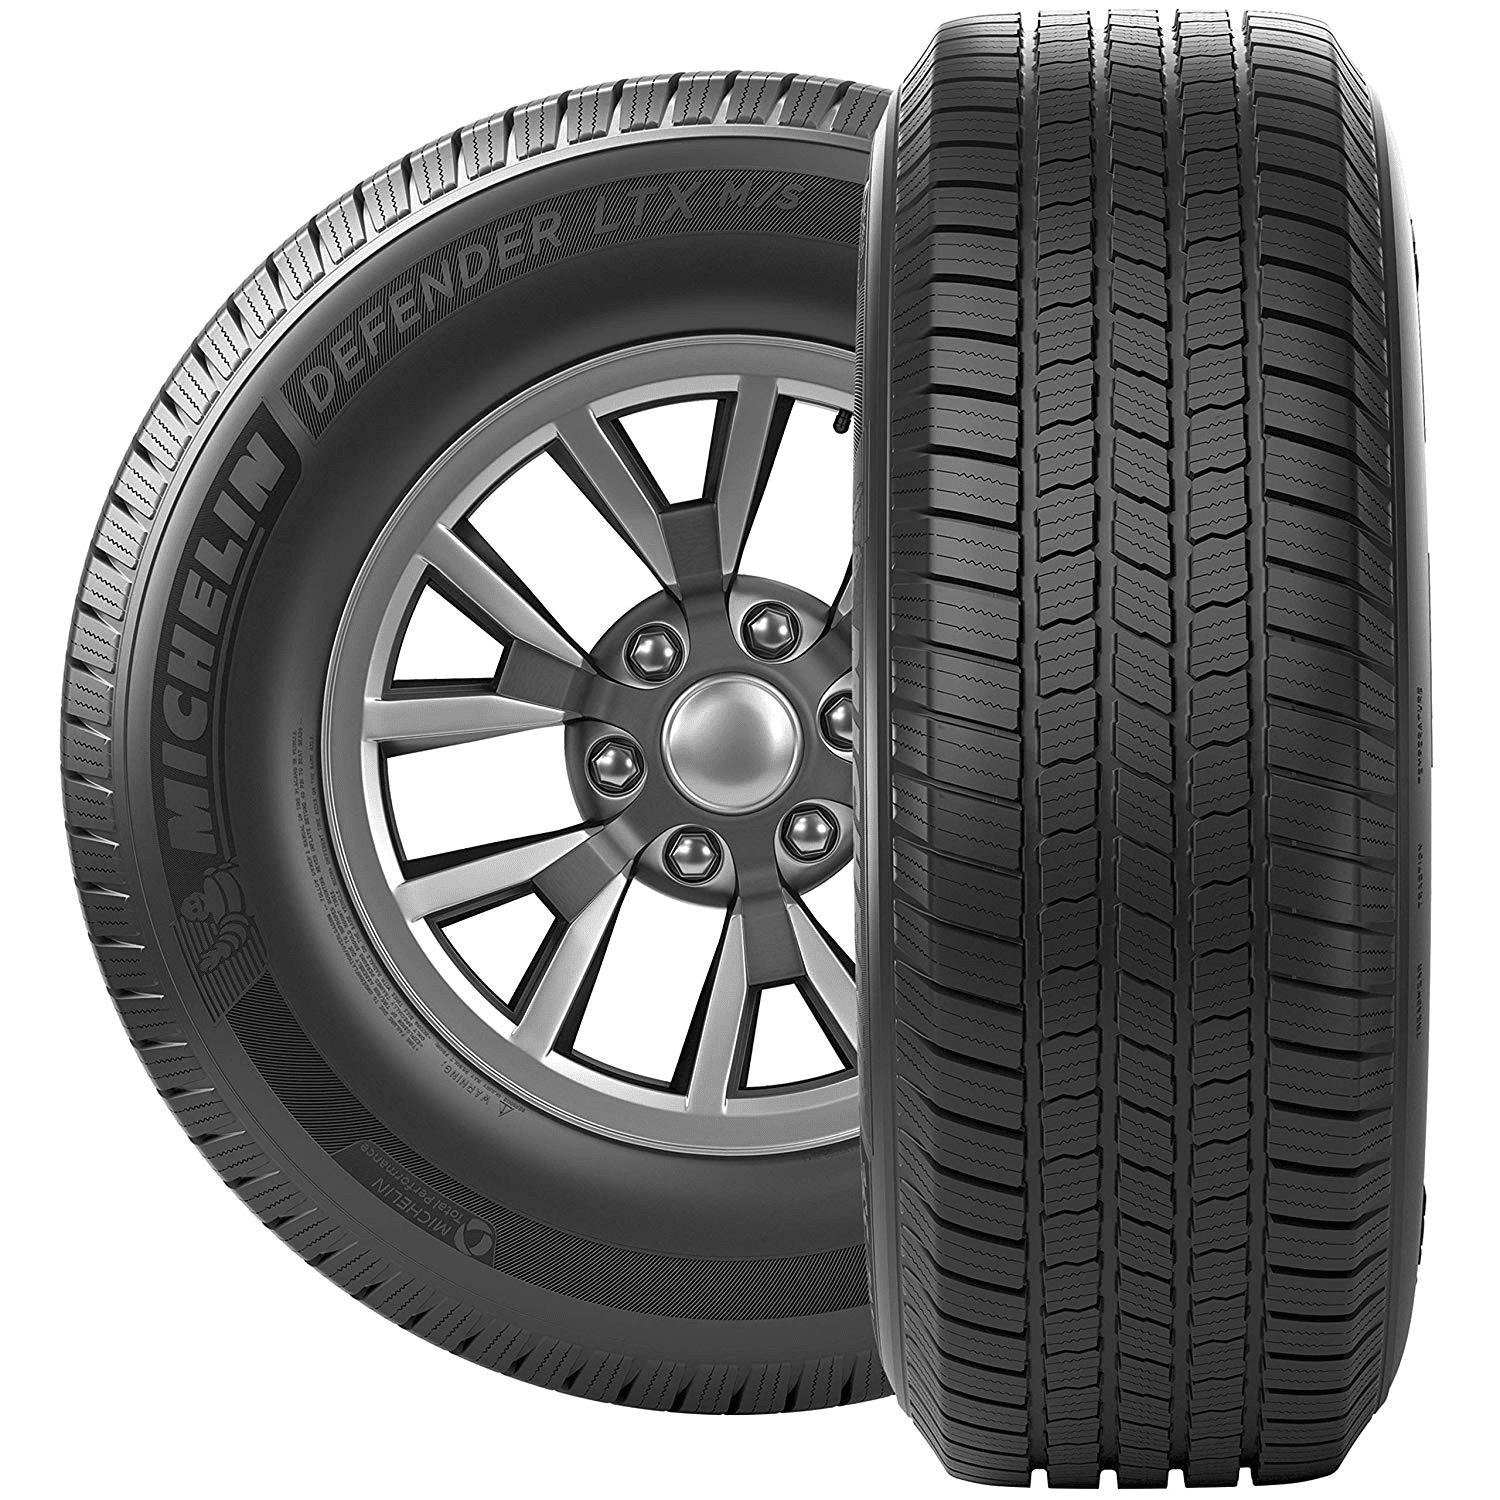 Michelin Defender LTX M/S 275/55R20 113 T Tire.